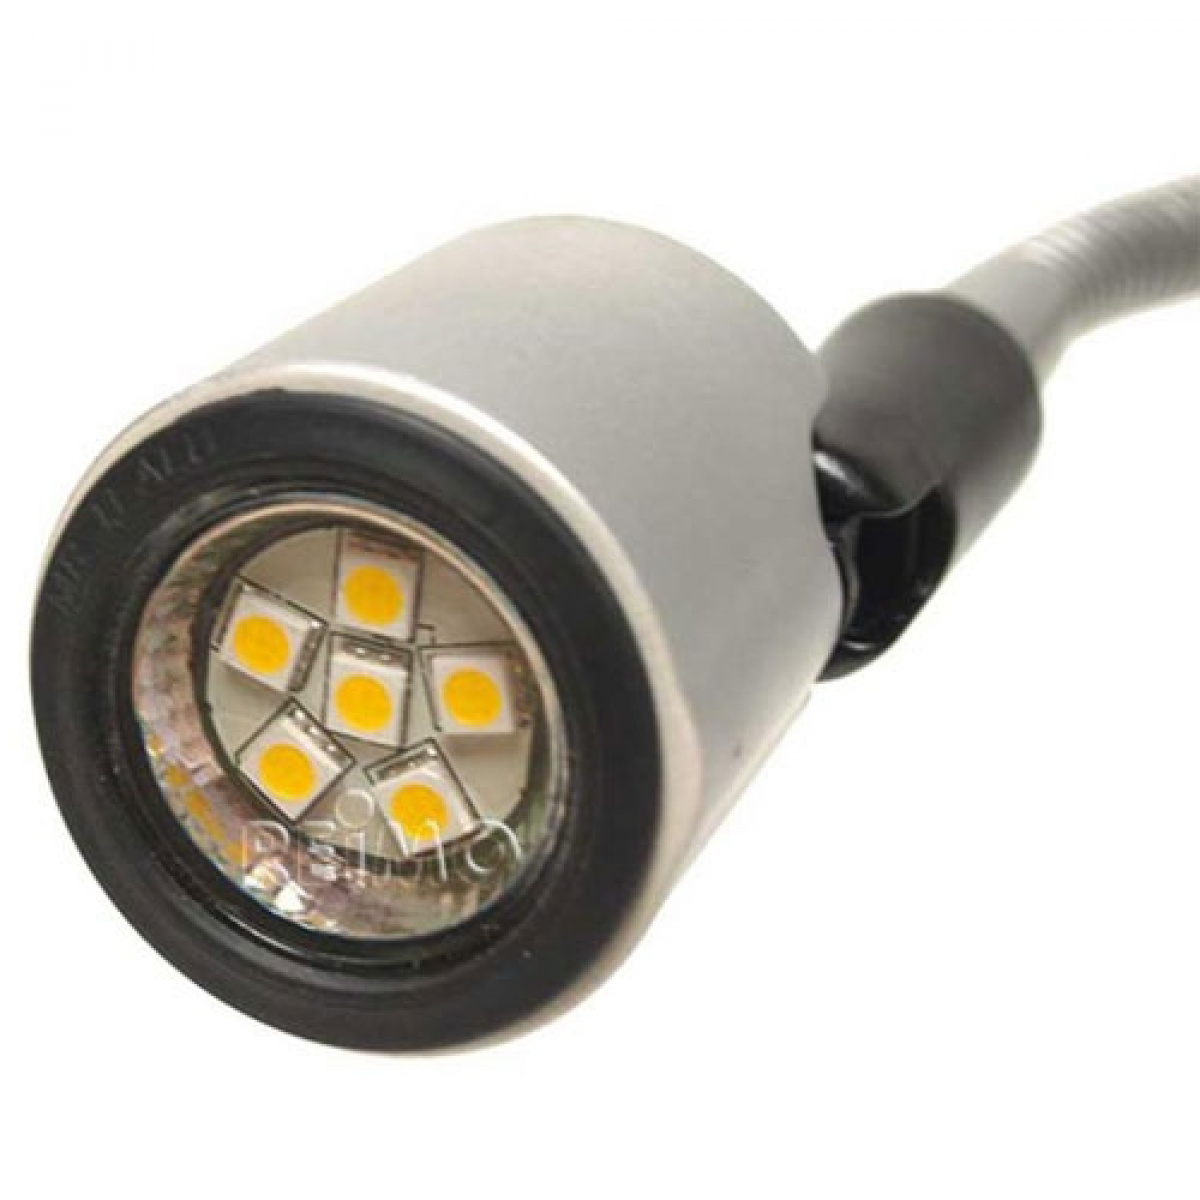 Fleksibel LED-lampe 12V-stik i gruppen Campingvogn og autocamper / El - Elektronik / Indvendig belysning / LED-Belysning / LED Spotlights hos Campmarket (65141)